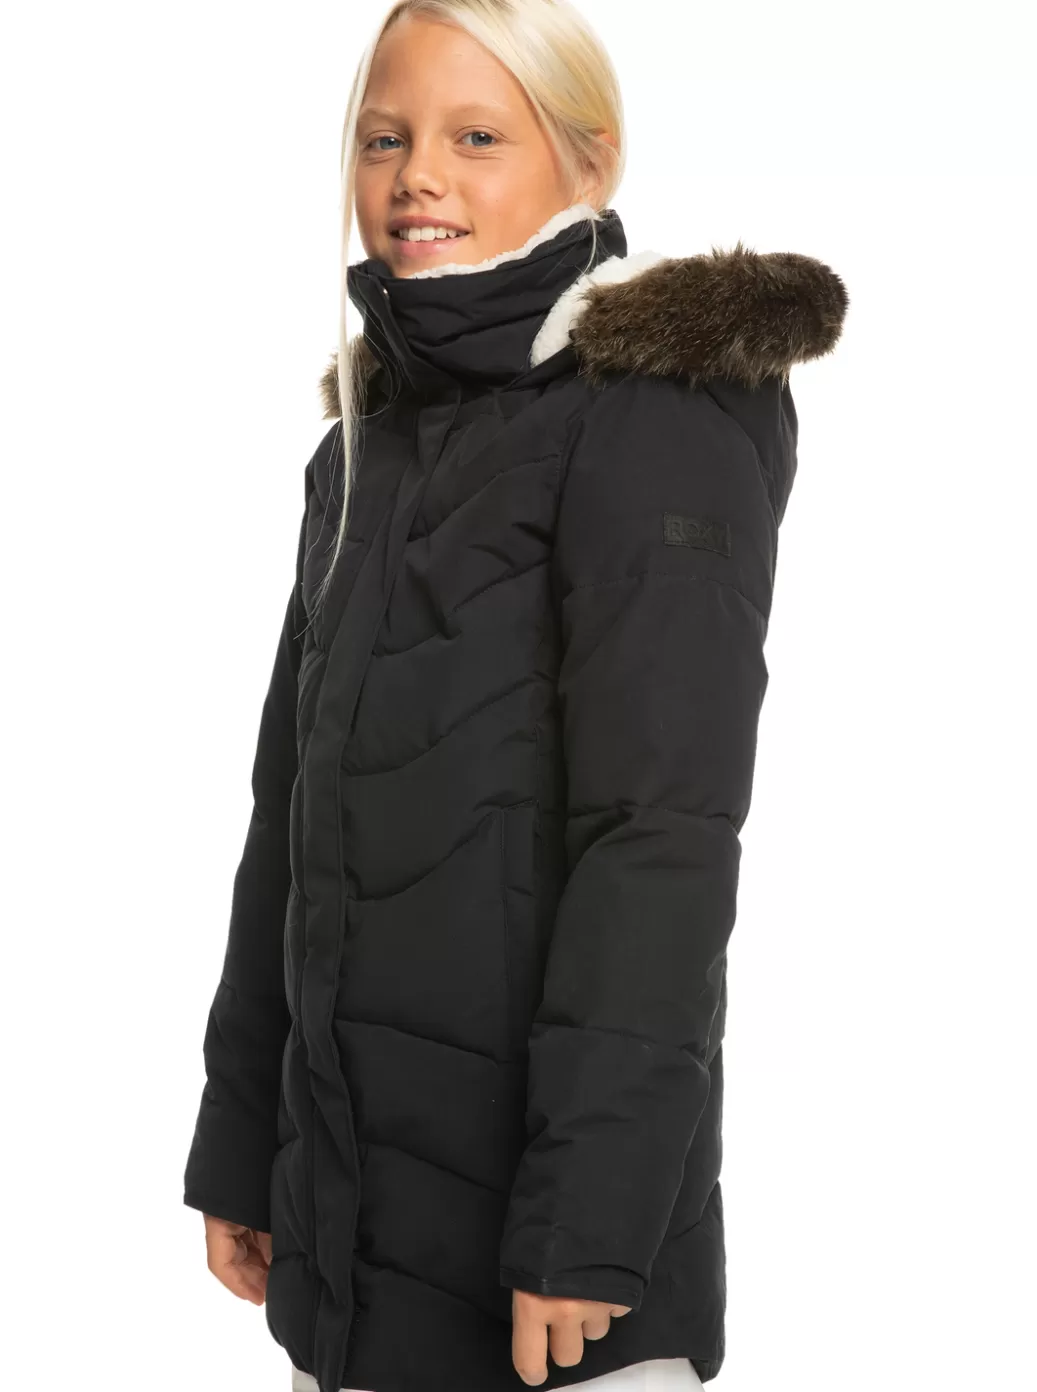 Jackets | Girls Snow | KIDS | WOMEN ROXY Girls' 4-16 Elsie Longline Winter Jacket True Black